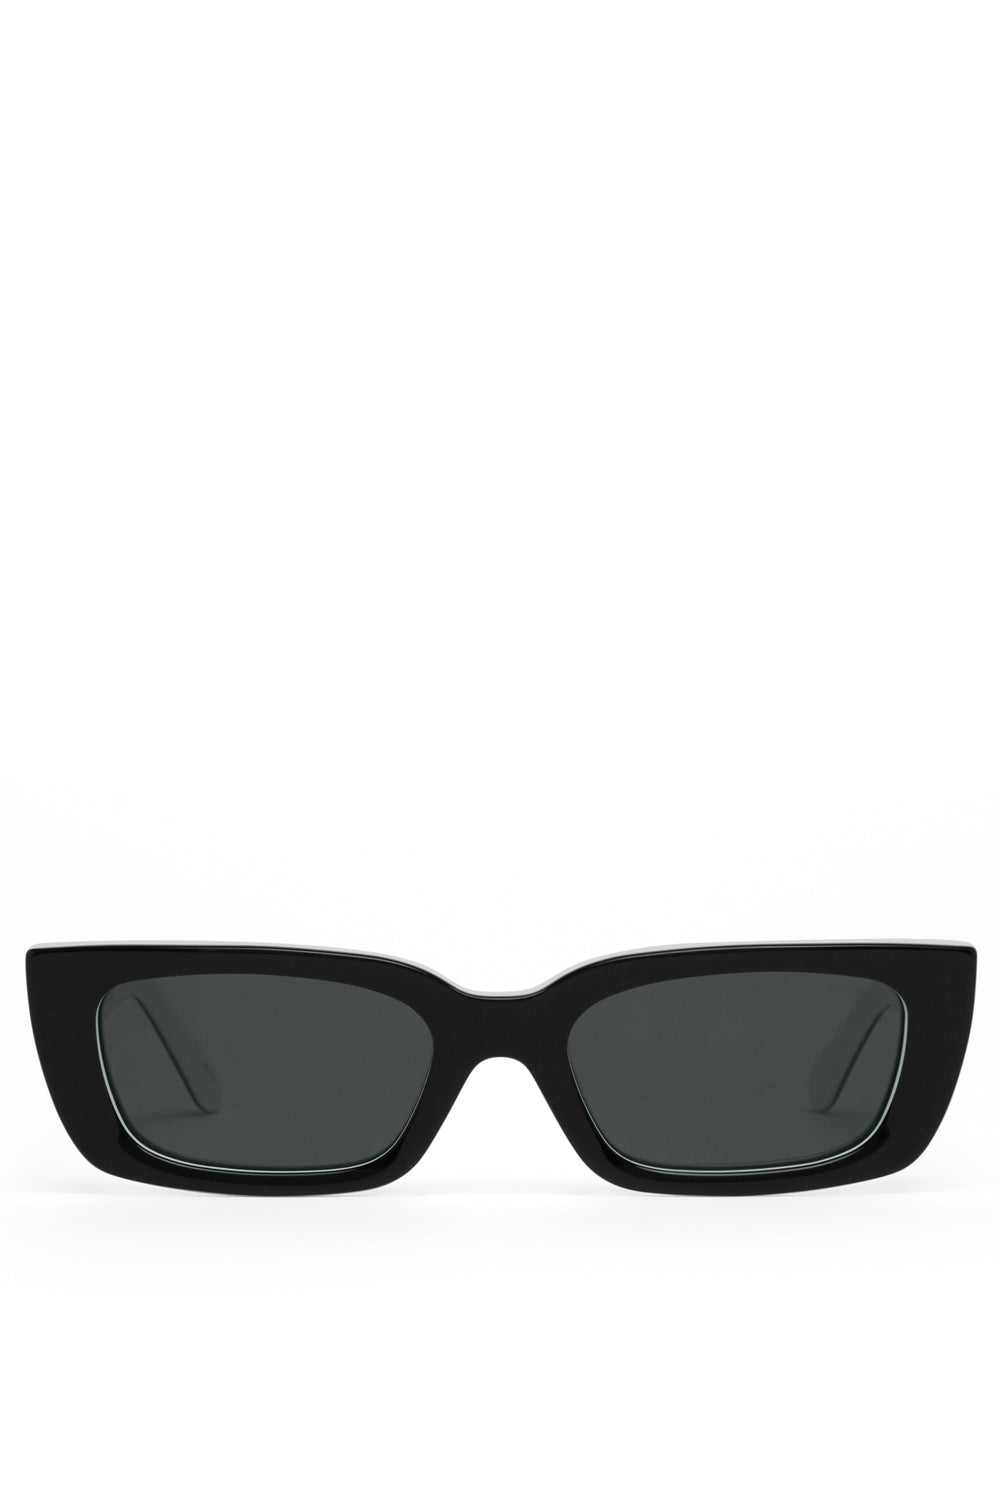 ACCESSORIES The Bundchen Sunglasses - Black Cream